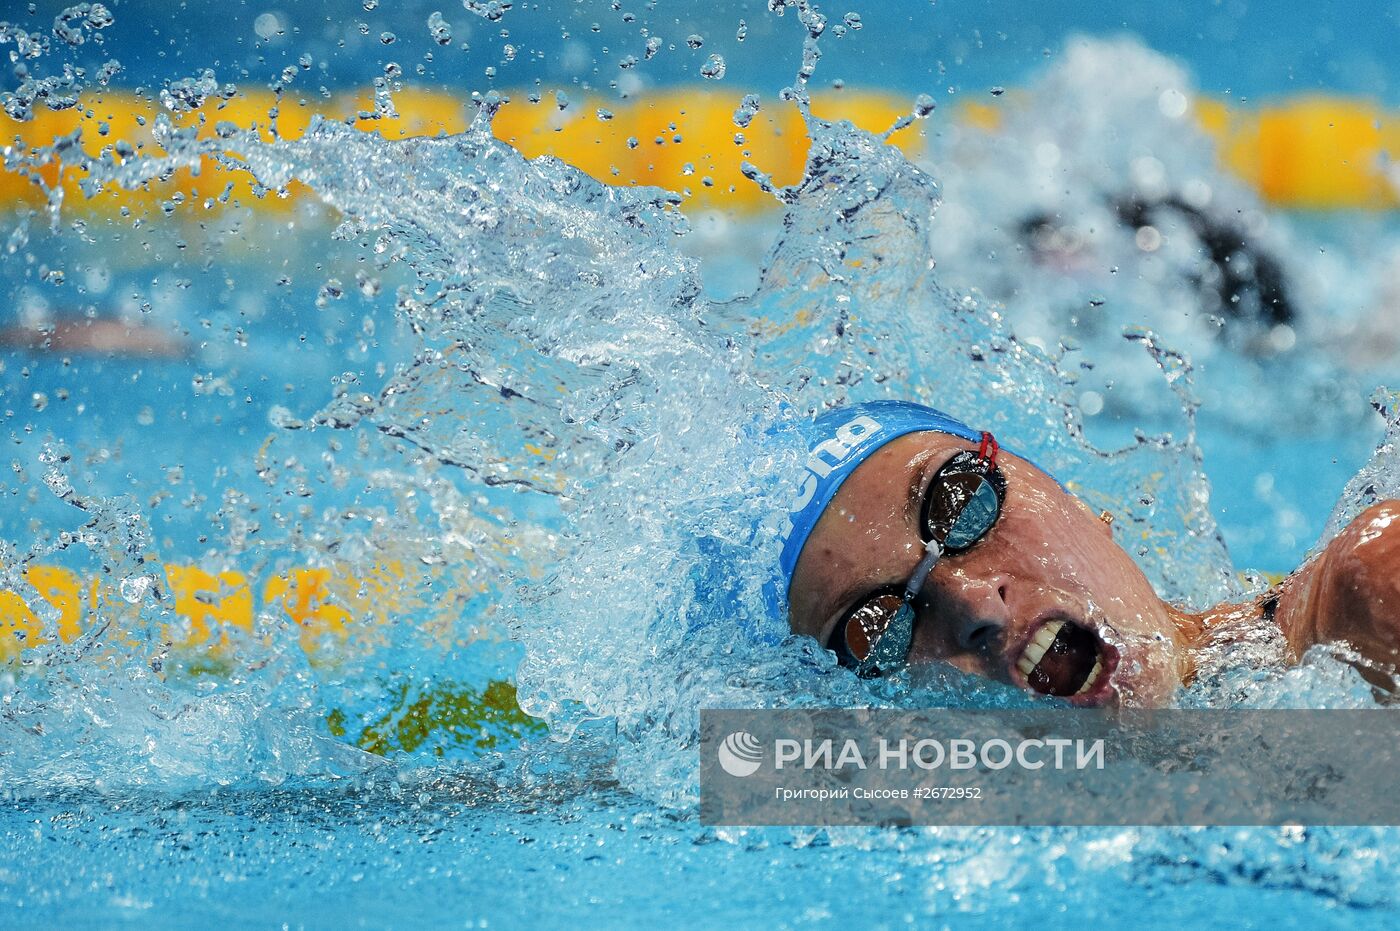 Чемпионат мира FINA 2015. Плавание. Третий день. Утренняя сессия